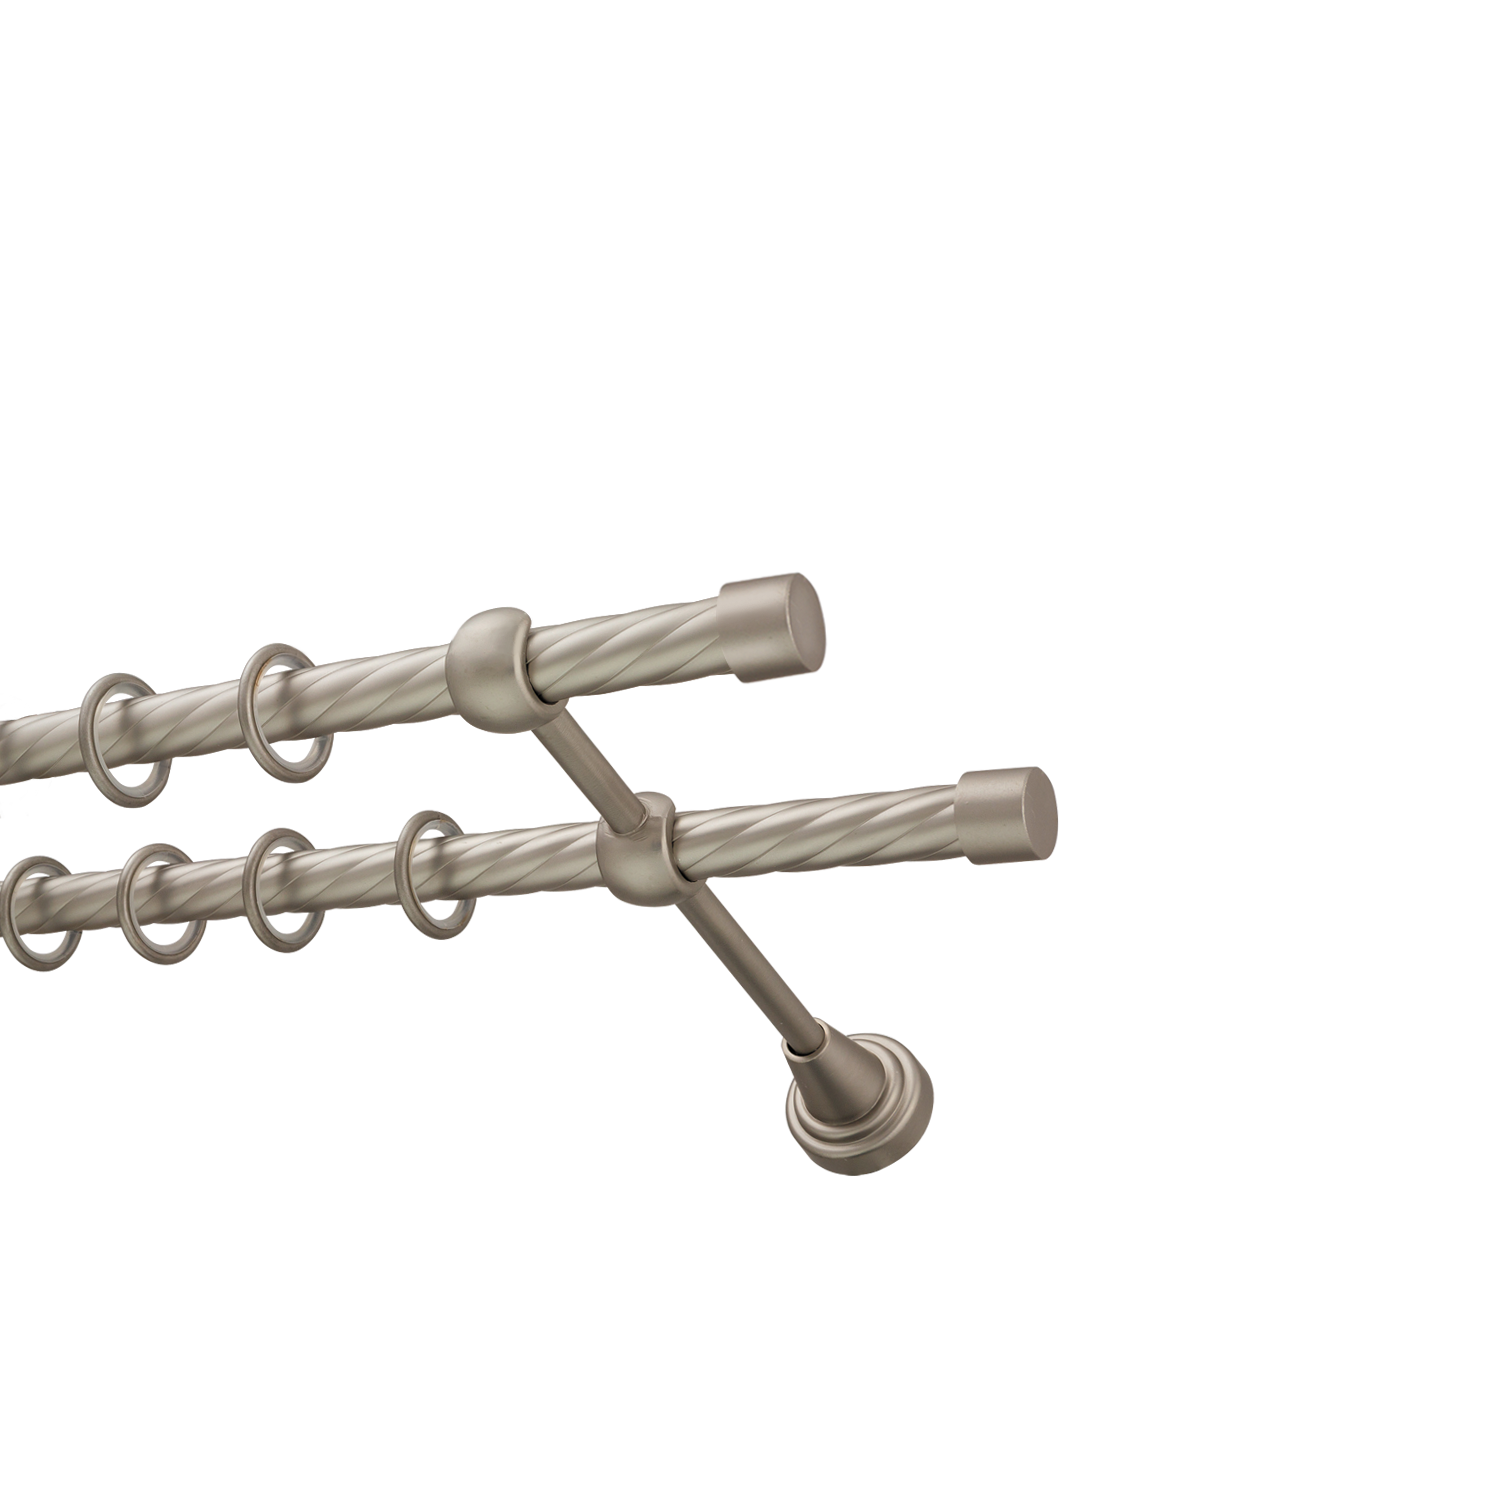 Металлический карниз для штор Заглушка, двухрядный 16/16 мм, сталь, витая штанга, длина 160 см